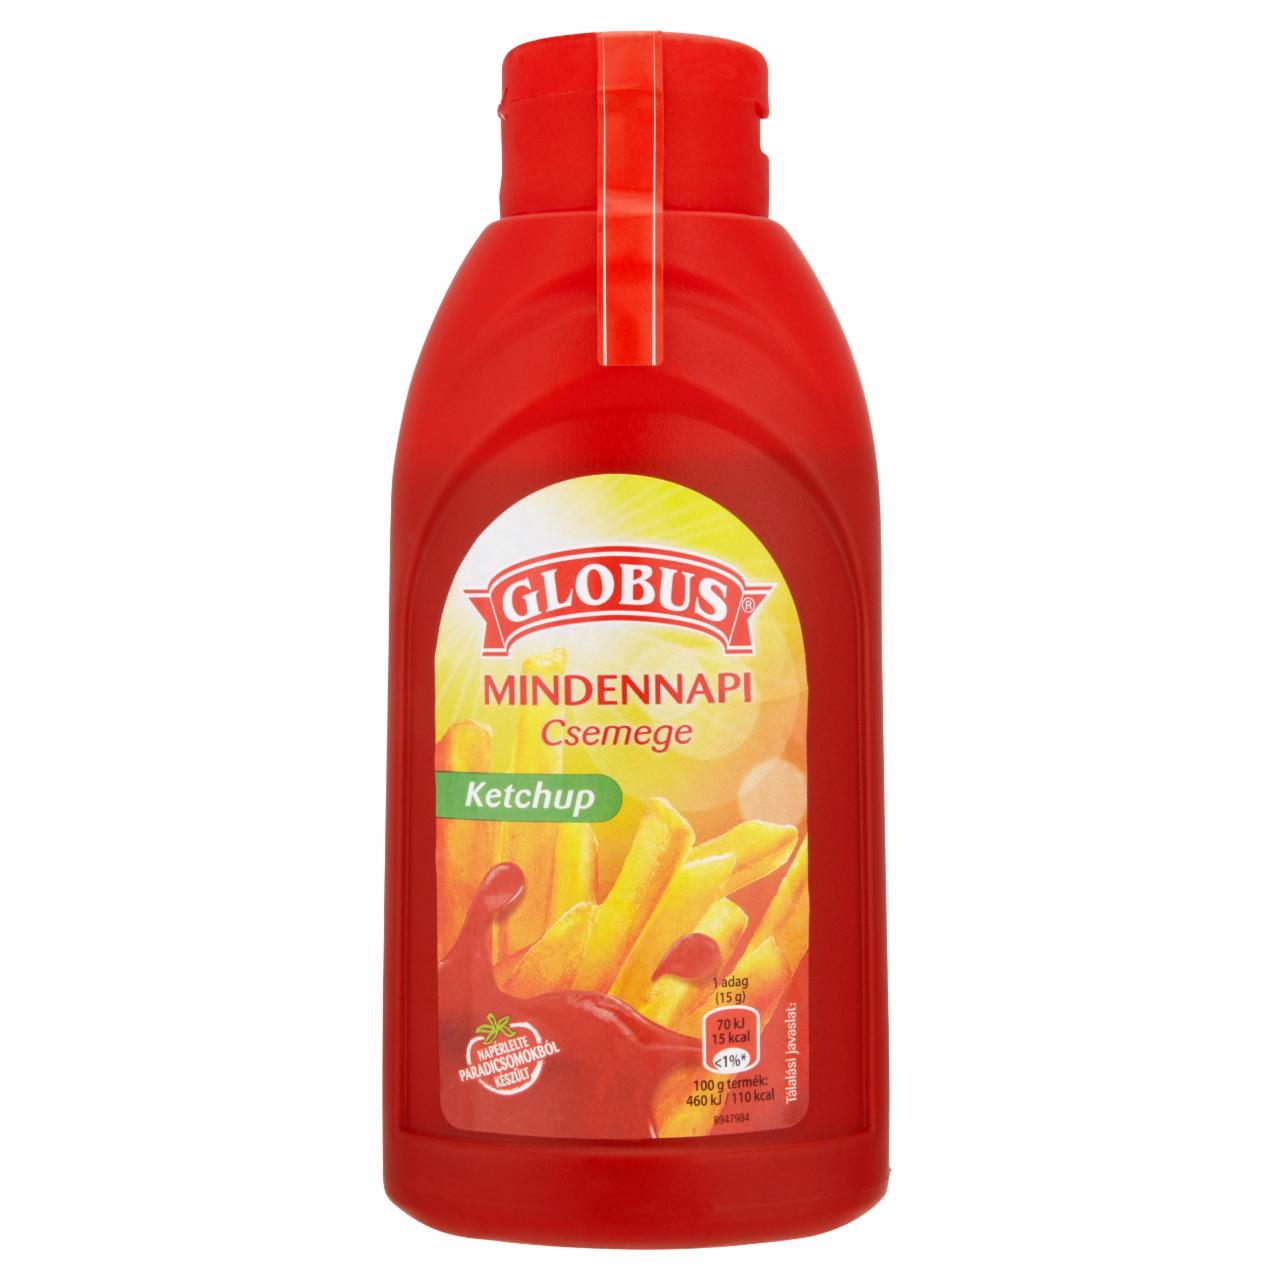 Képek - Globus Mindennapi ketchup 450 g